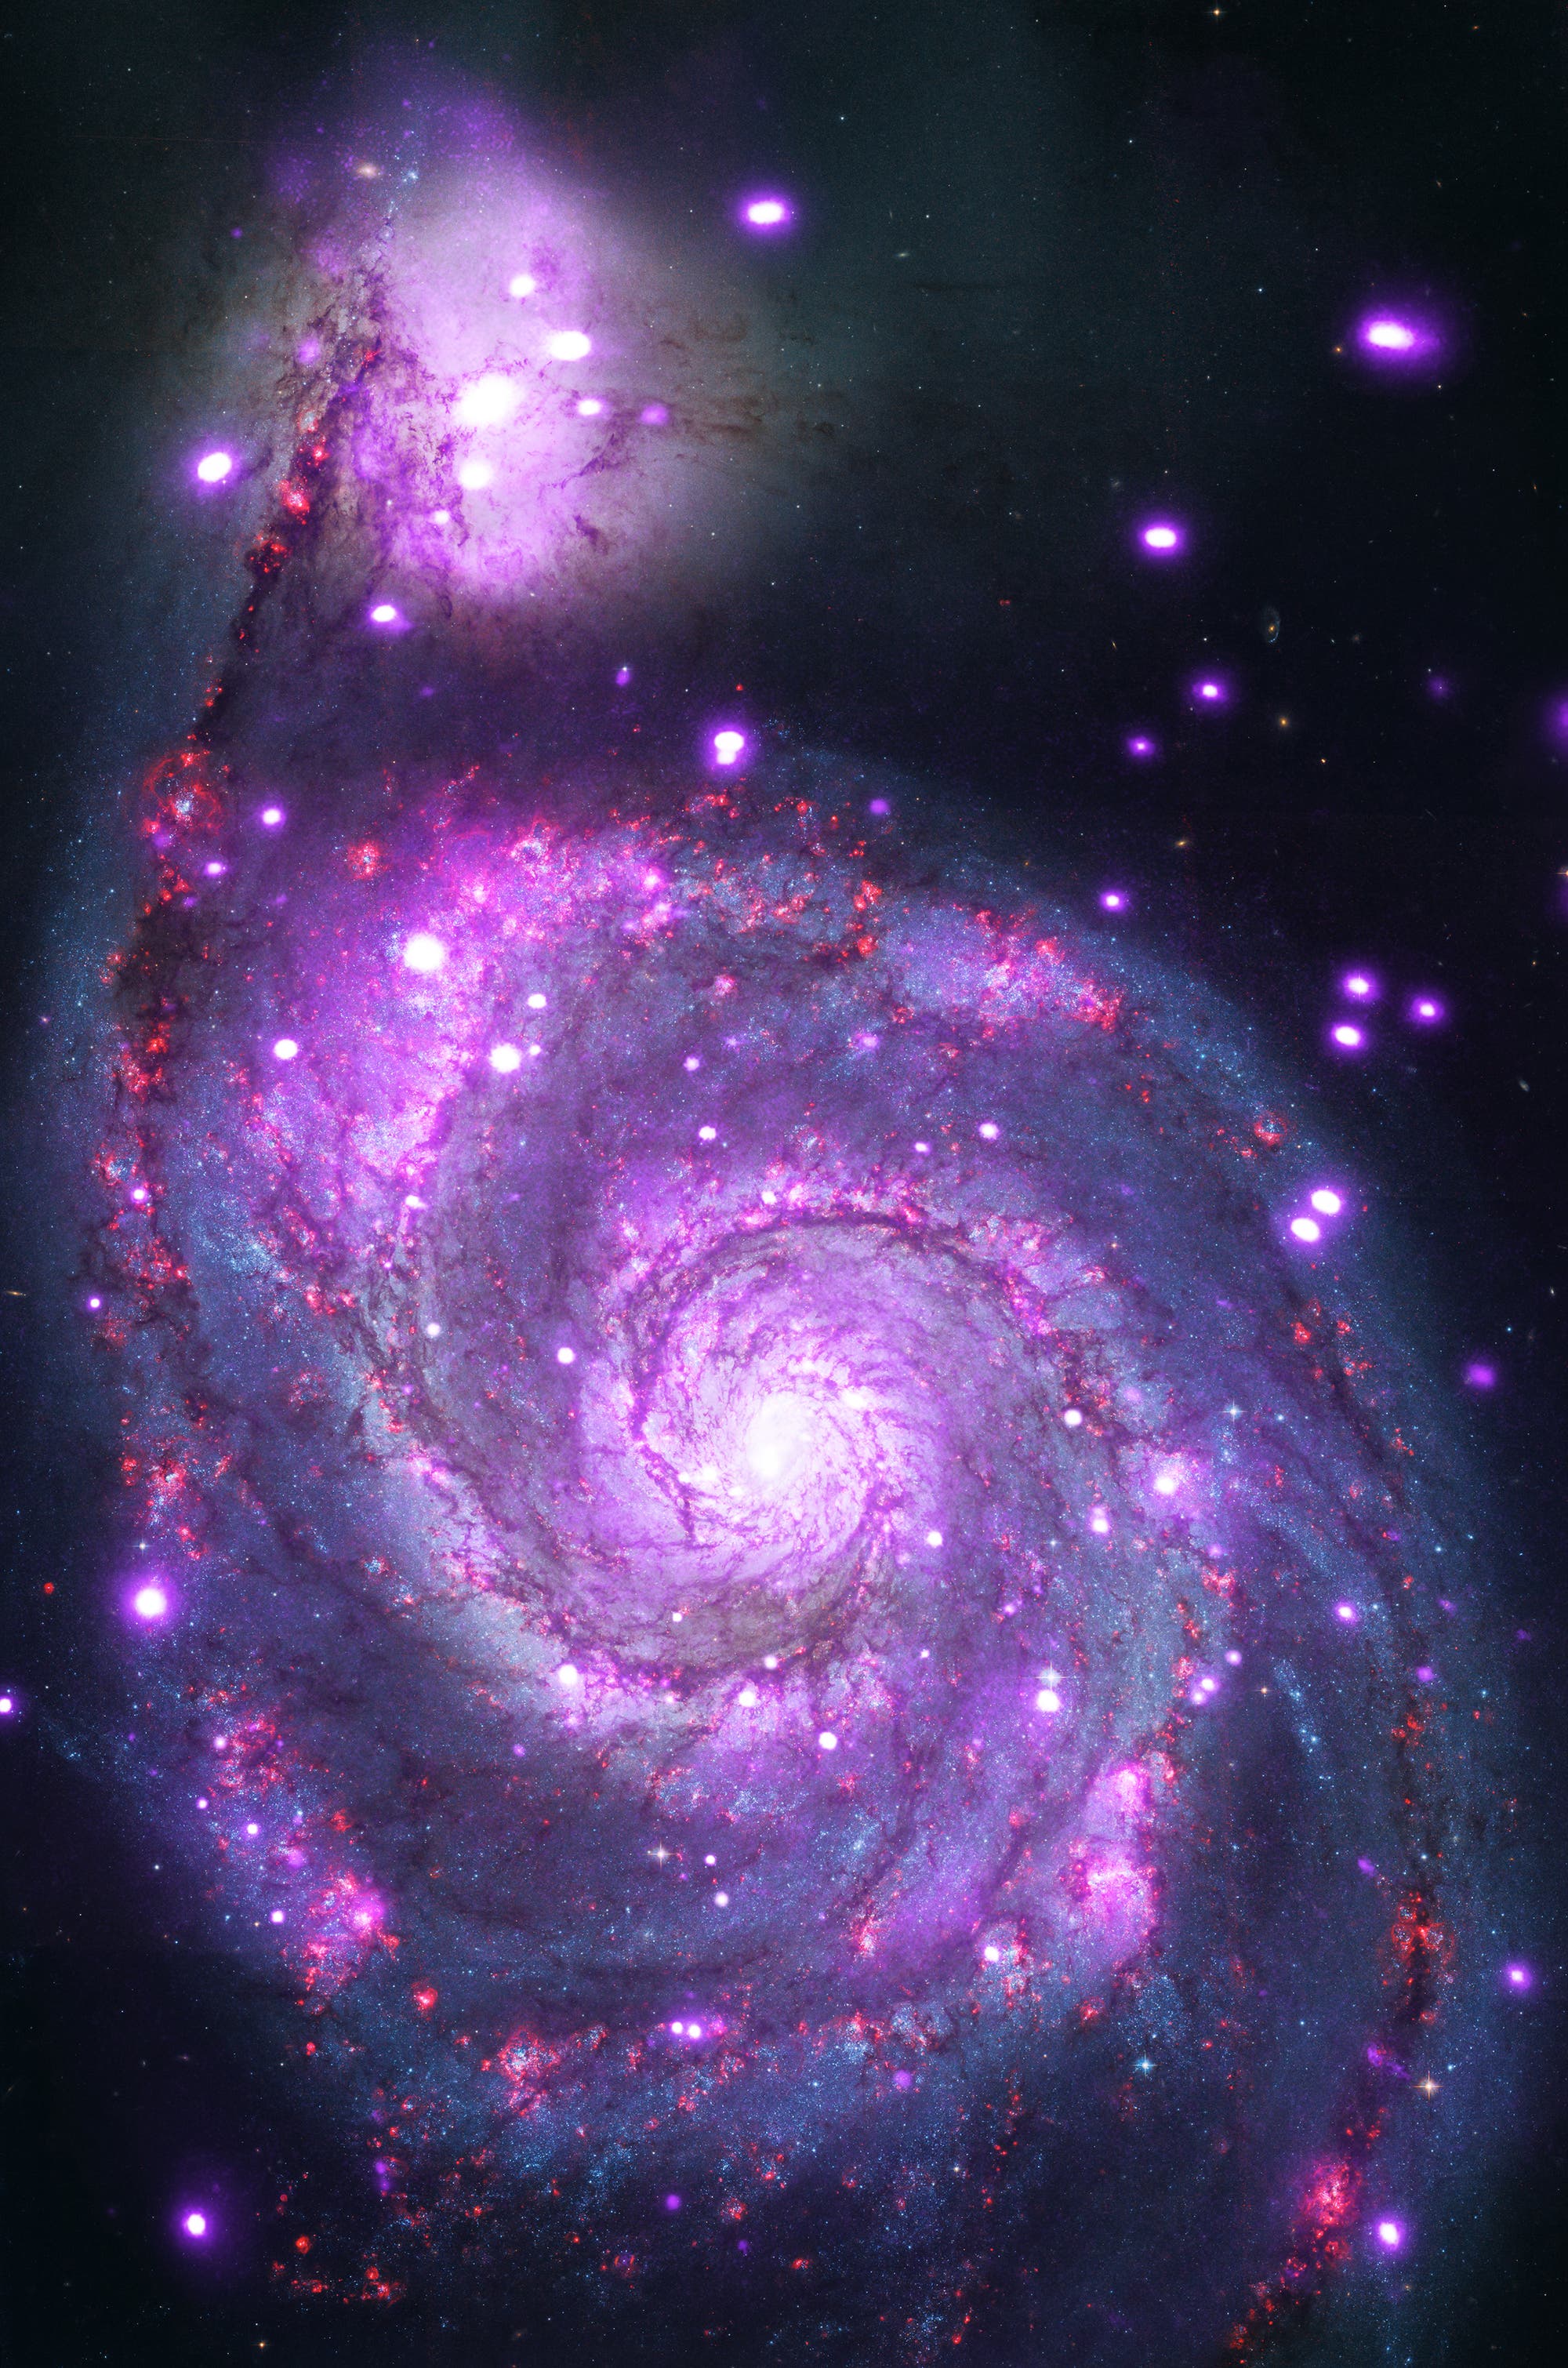 Kompositbild der Whirlpool Galaxie M51